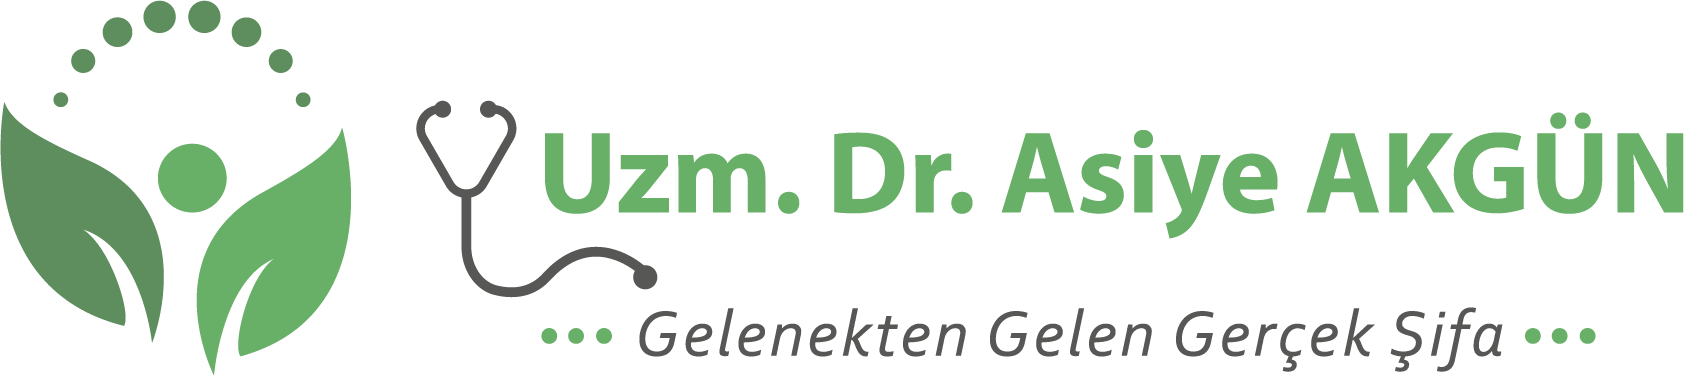 Uzm.Dr.Asiye AKGÜN Logo